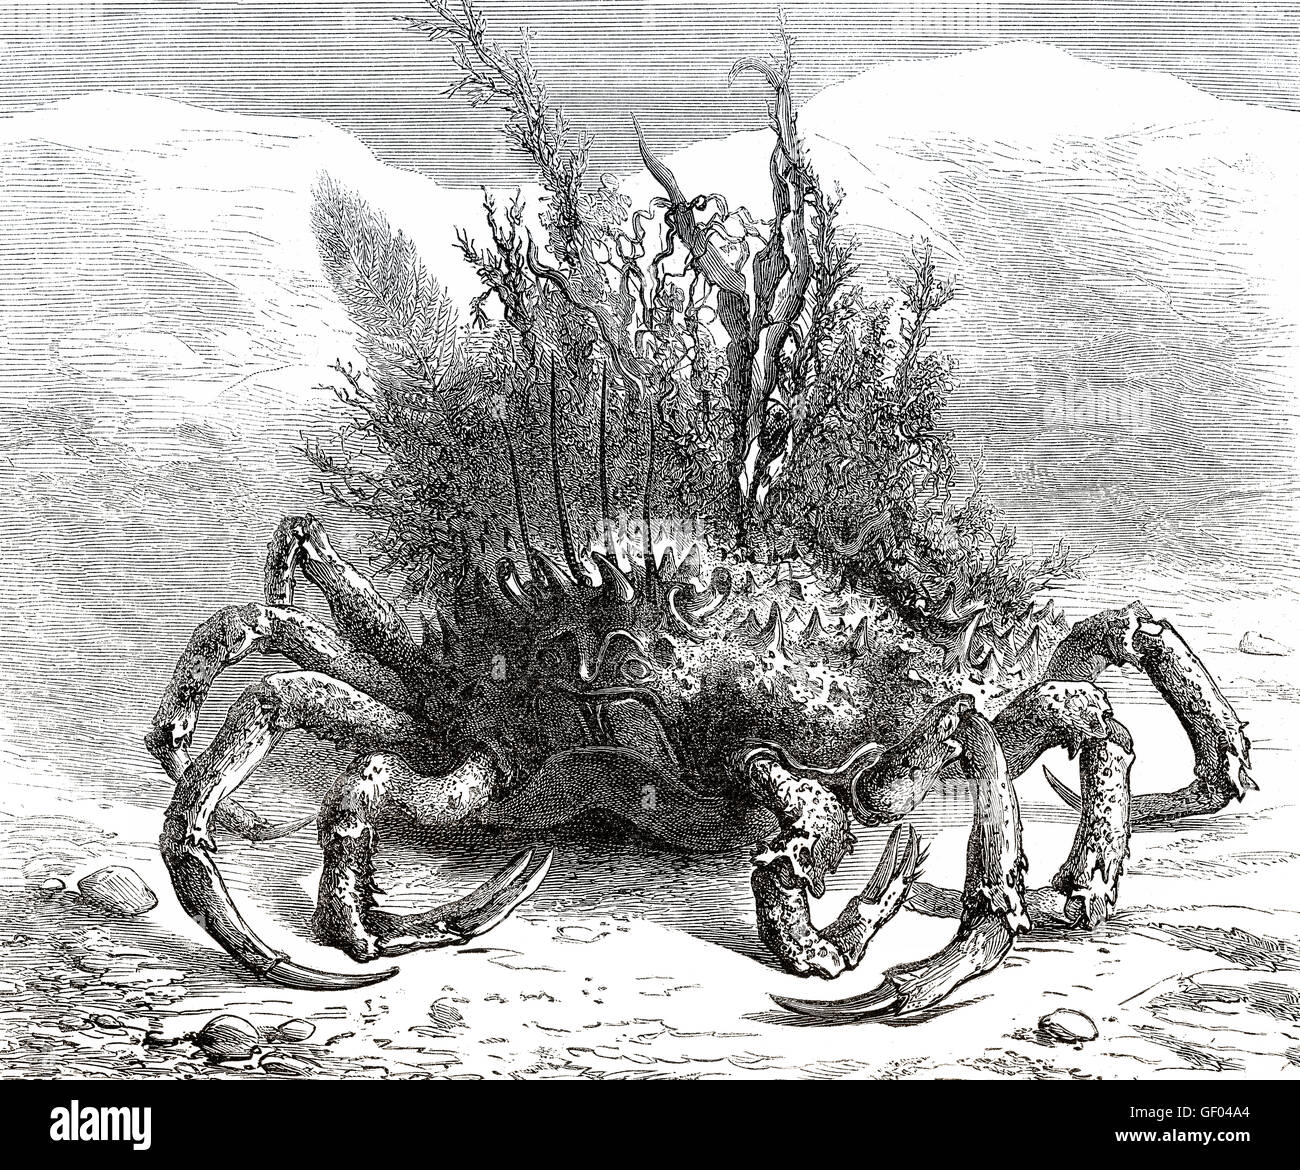 Maja Squinado, Europäische Seespinnen, stacheligen Seespinnen oder abstehenden Seespinnen, eine Art von wandernden Krabbe in der Nort gefunden Stockfoto